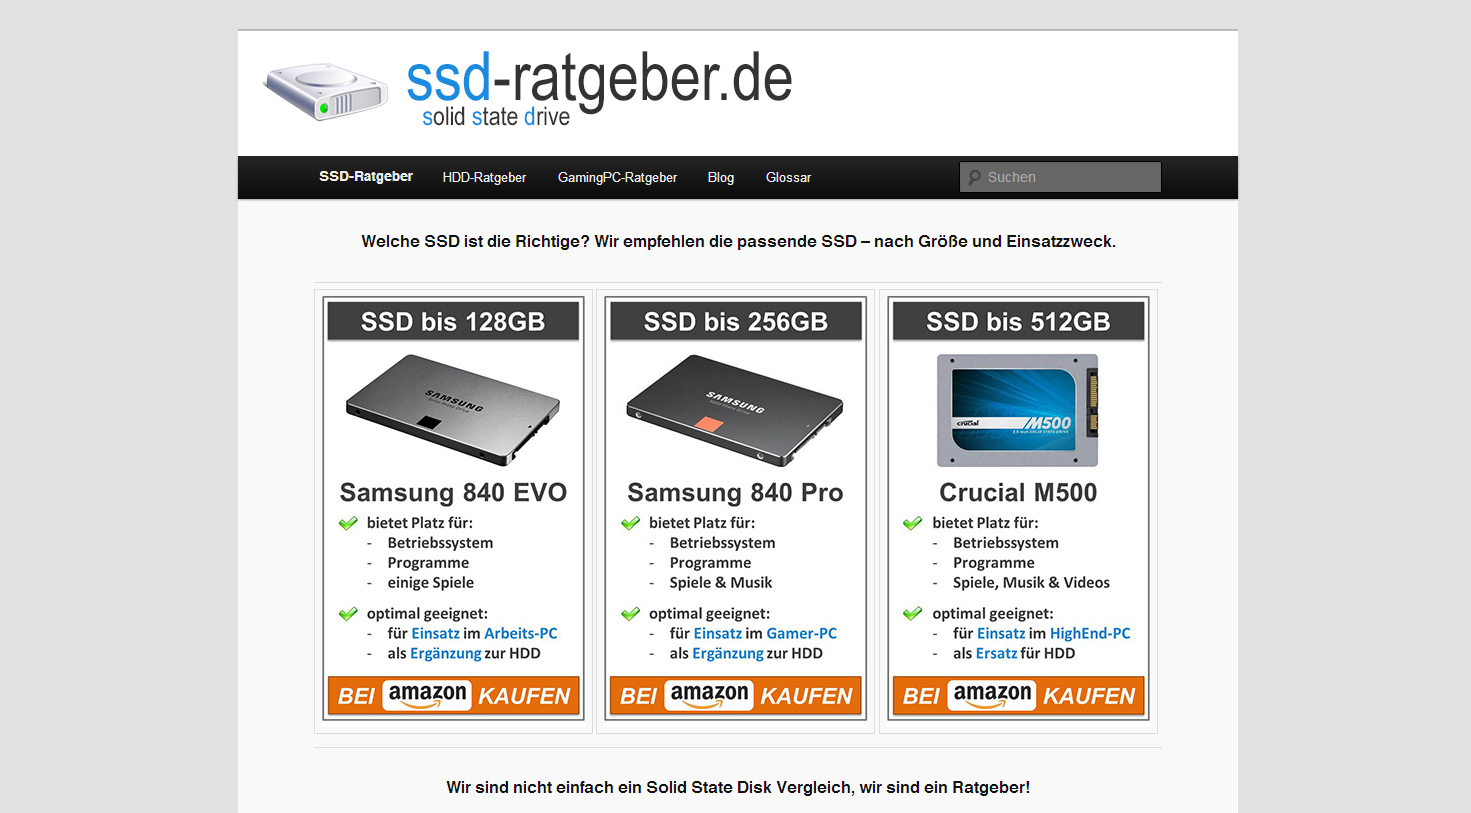 ssd-ratgeber.de - SSD Vergleiche und Ratgeber auf einer Seite!